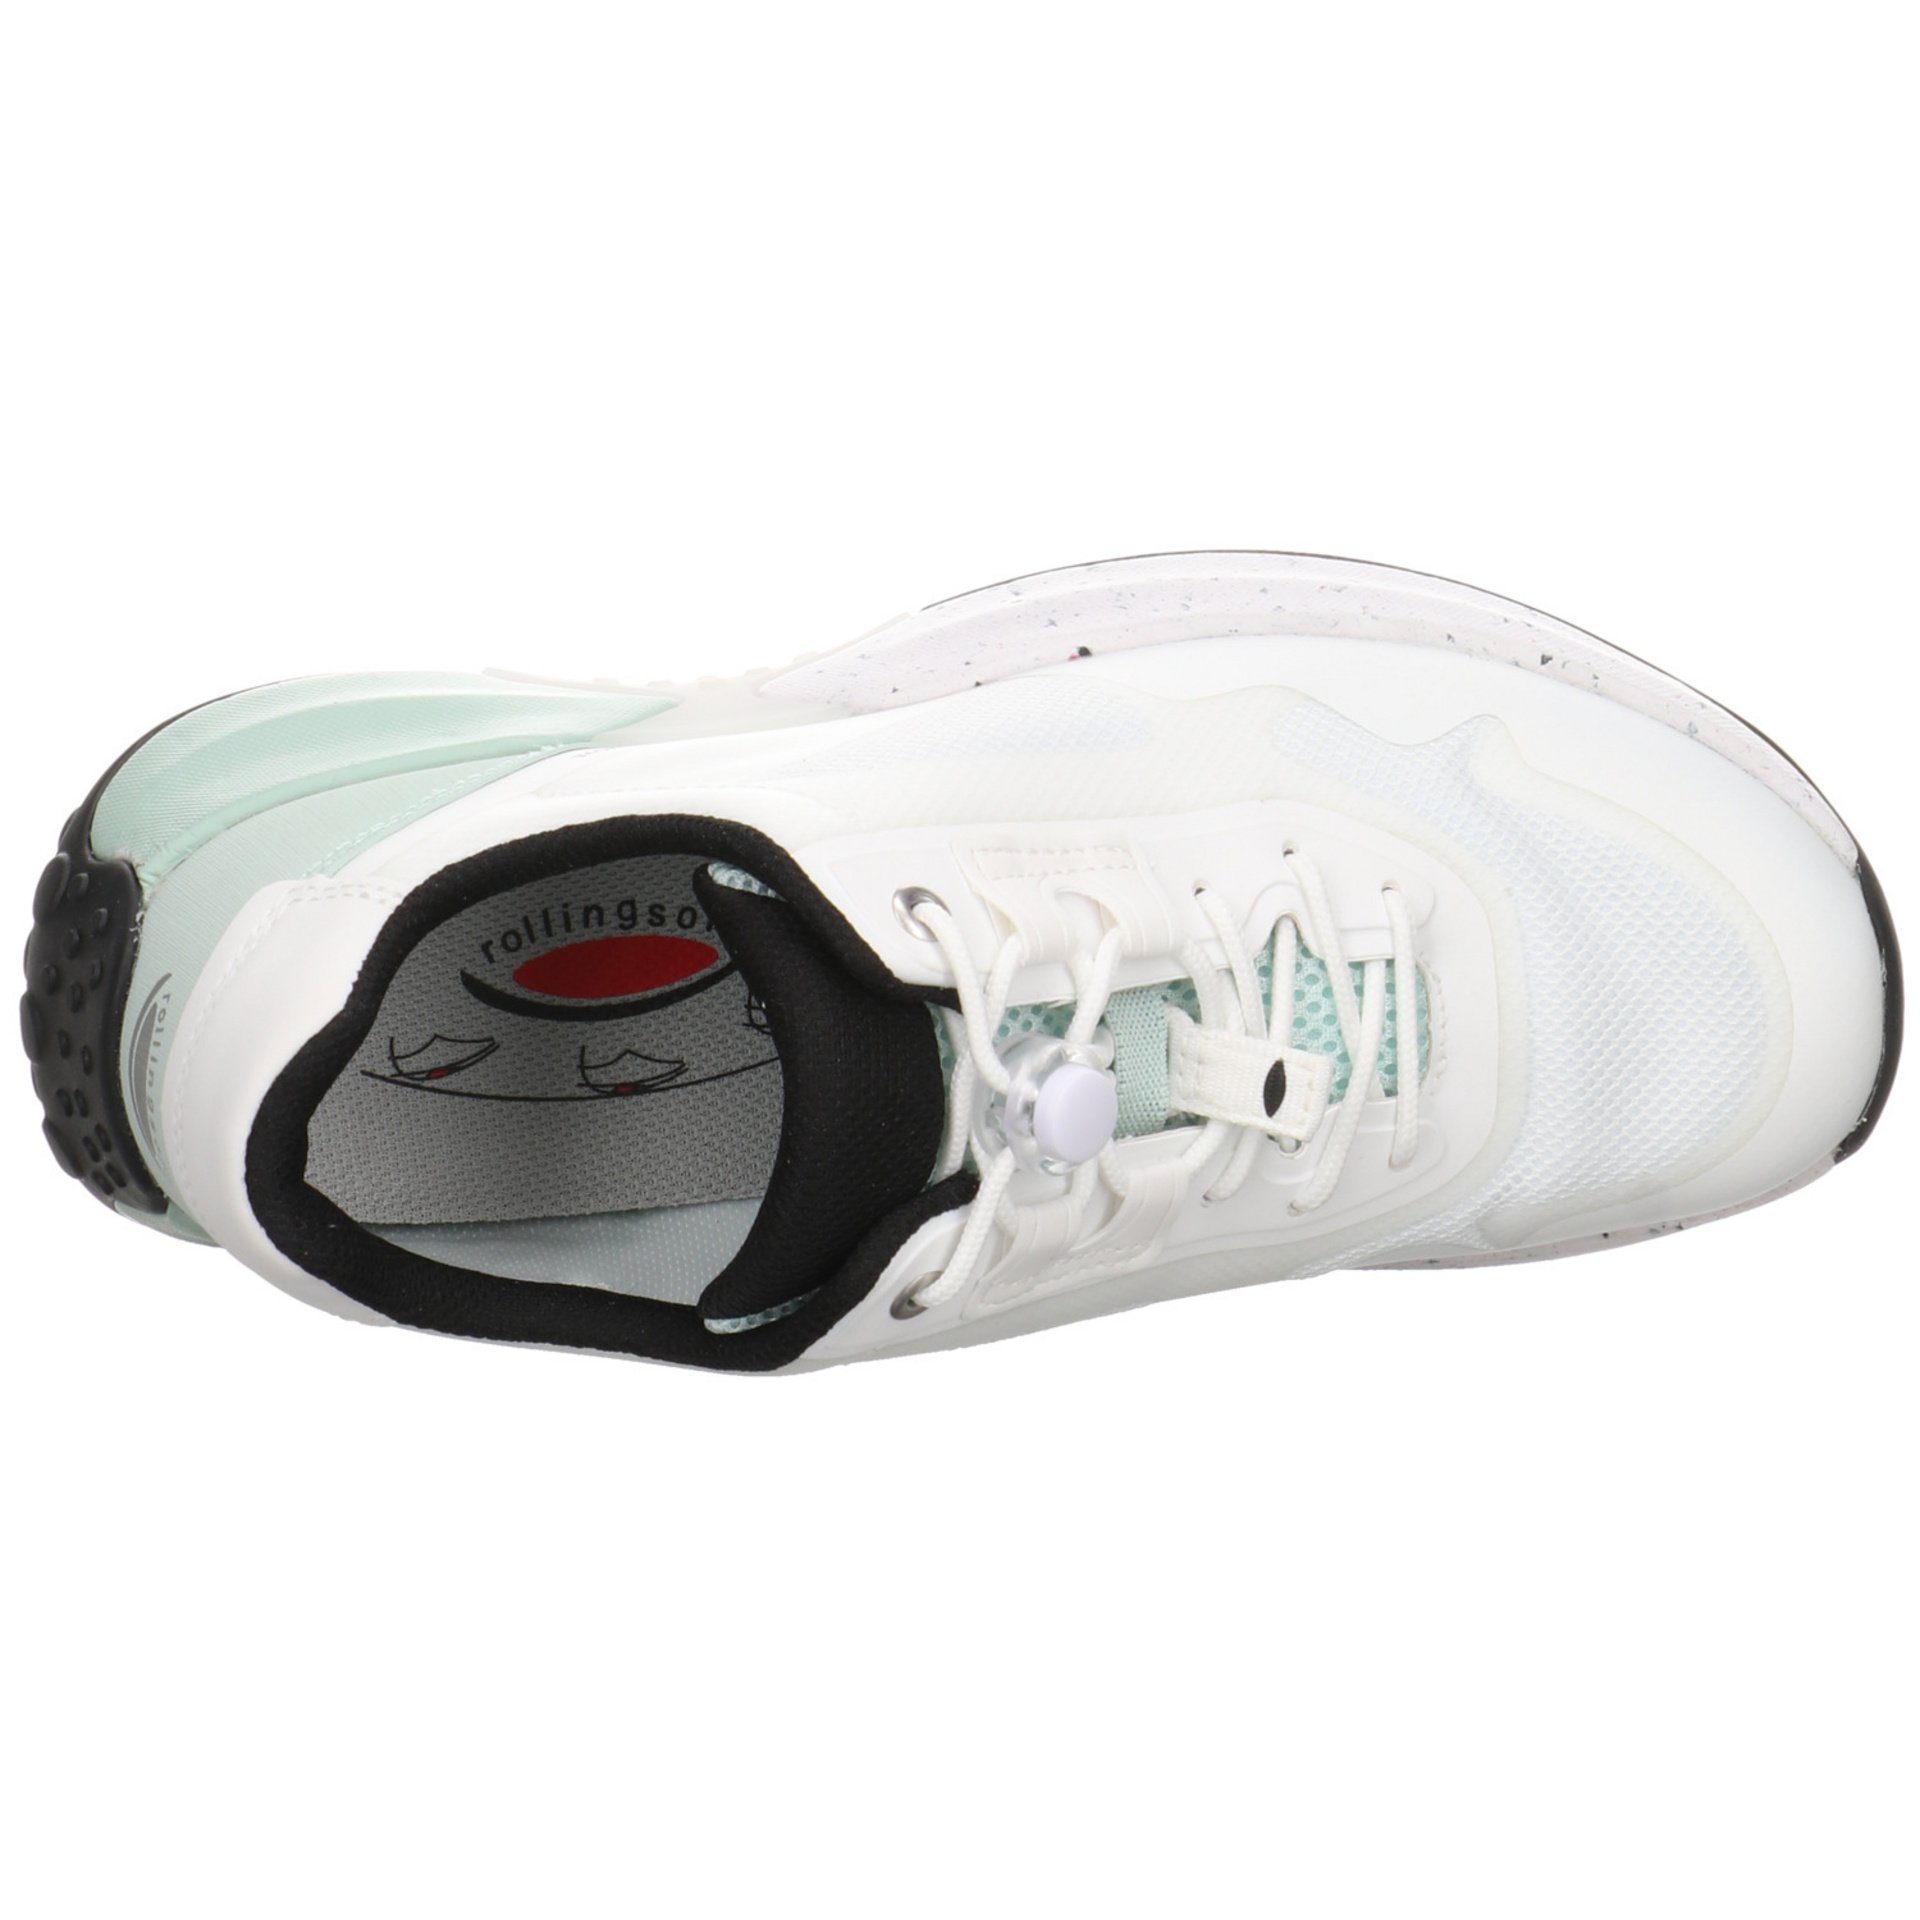 Gabor Damen Slipper Schuhe Rollingsoft Slip-On weiss/mint Synthetikkombination Sneaker Sneaker